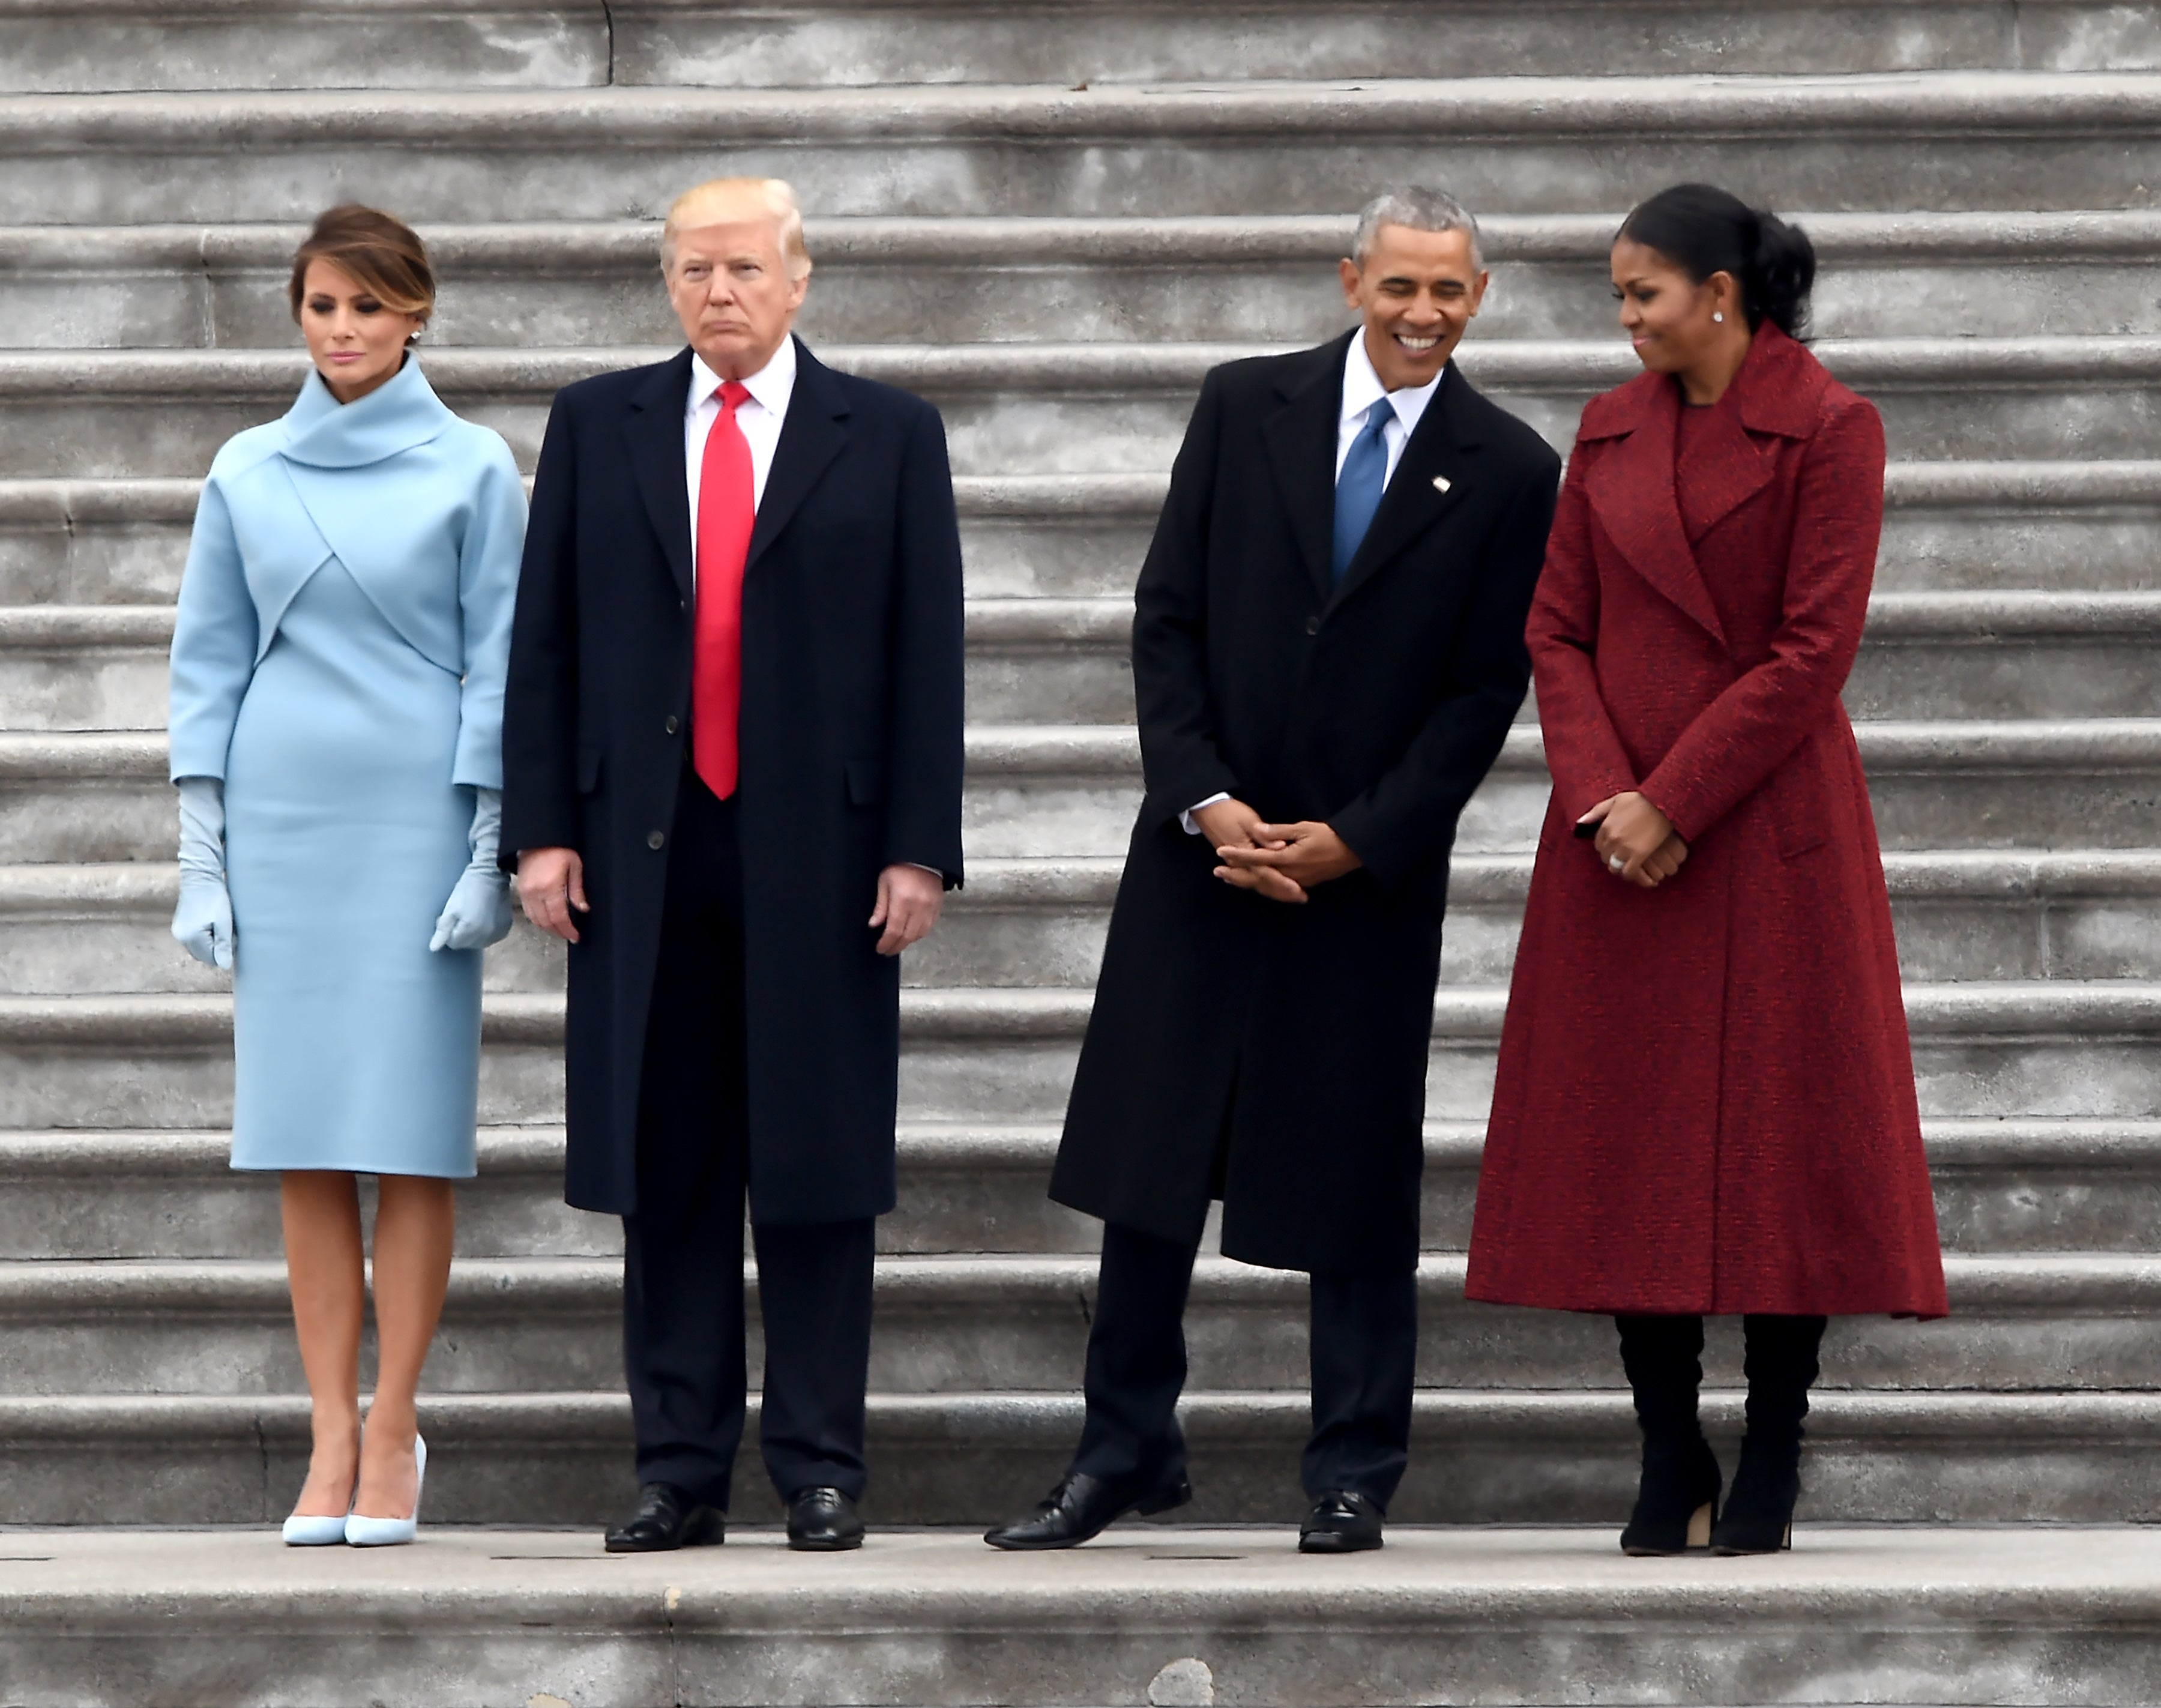 La primera dama Melania Trump, el presidente Donald Trump, el ex presidente Barack Obama y Michelle Obama se paran en los escalones del frente este del Capitolio de los Estados Unidos después de las ceremonias de inauguración el 20 de enero de 2017.